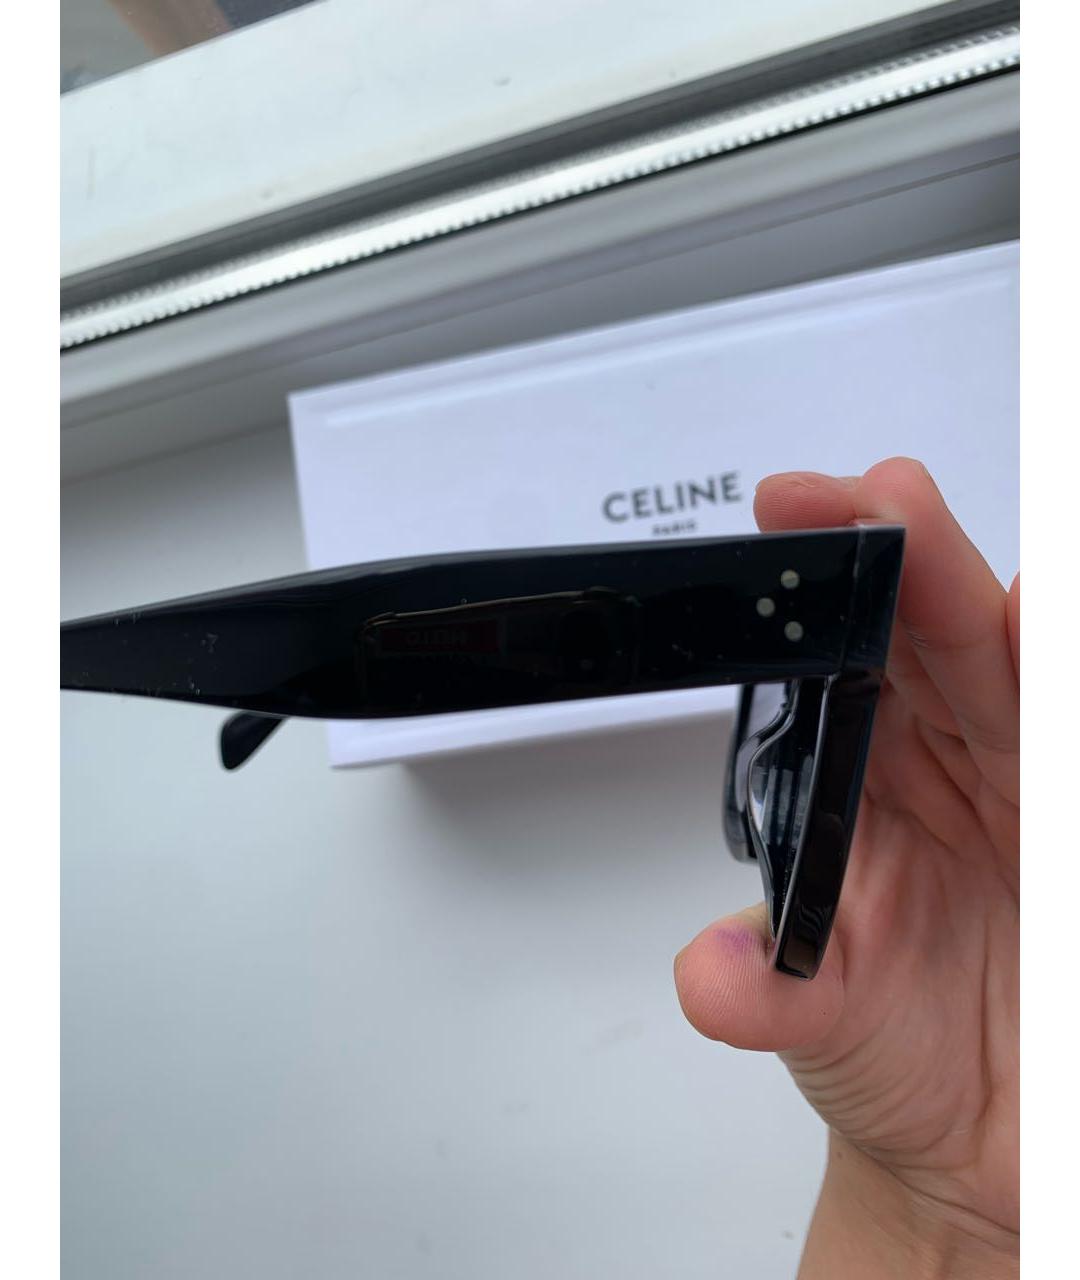 CELINE PRE-OWNED Черные пластиковые солнцезащитные очки, фото 3